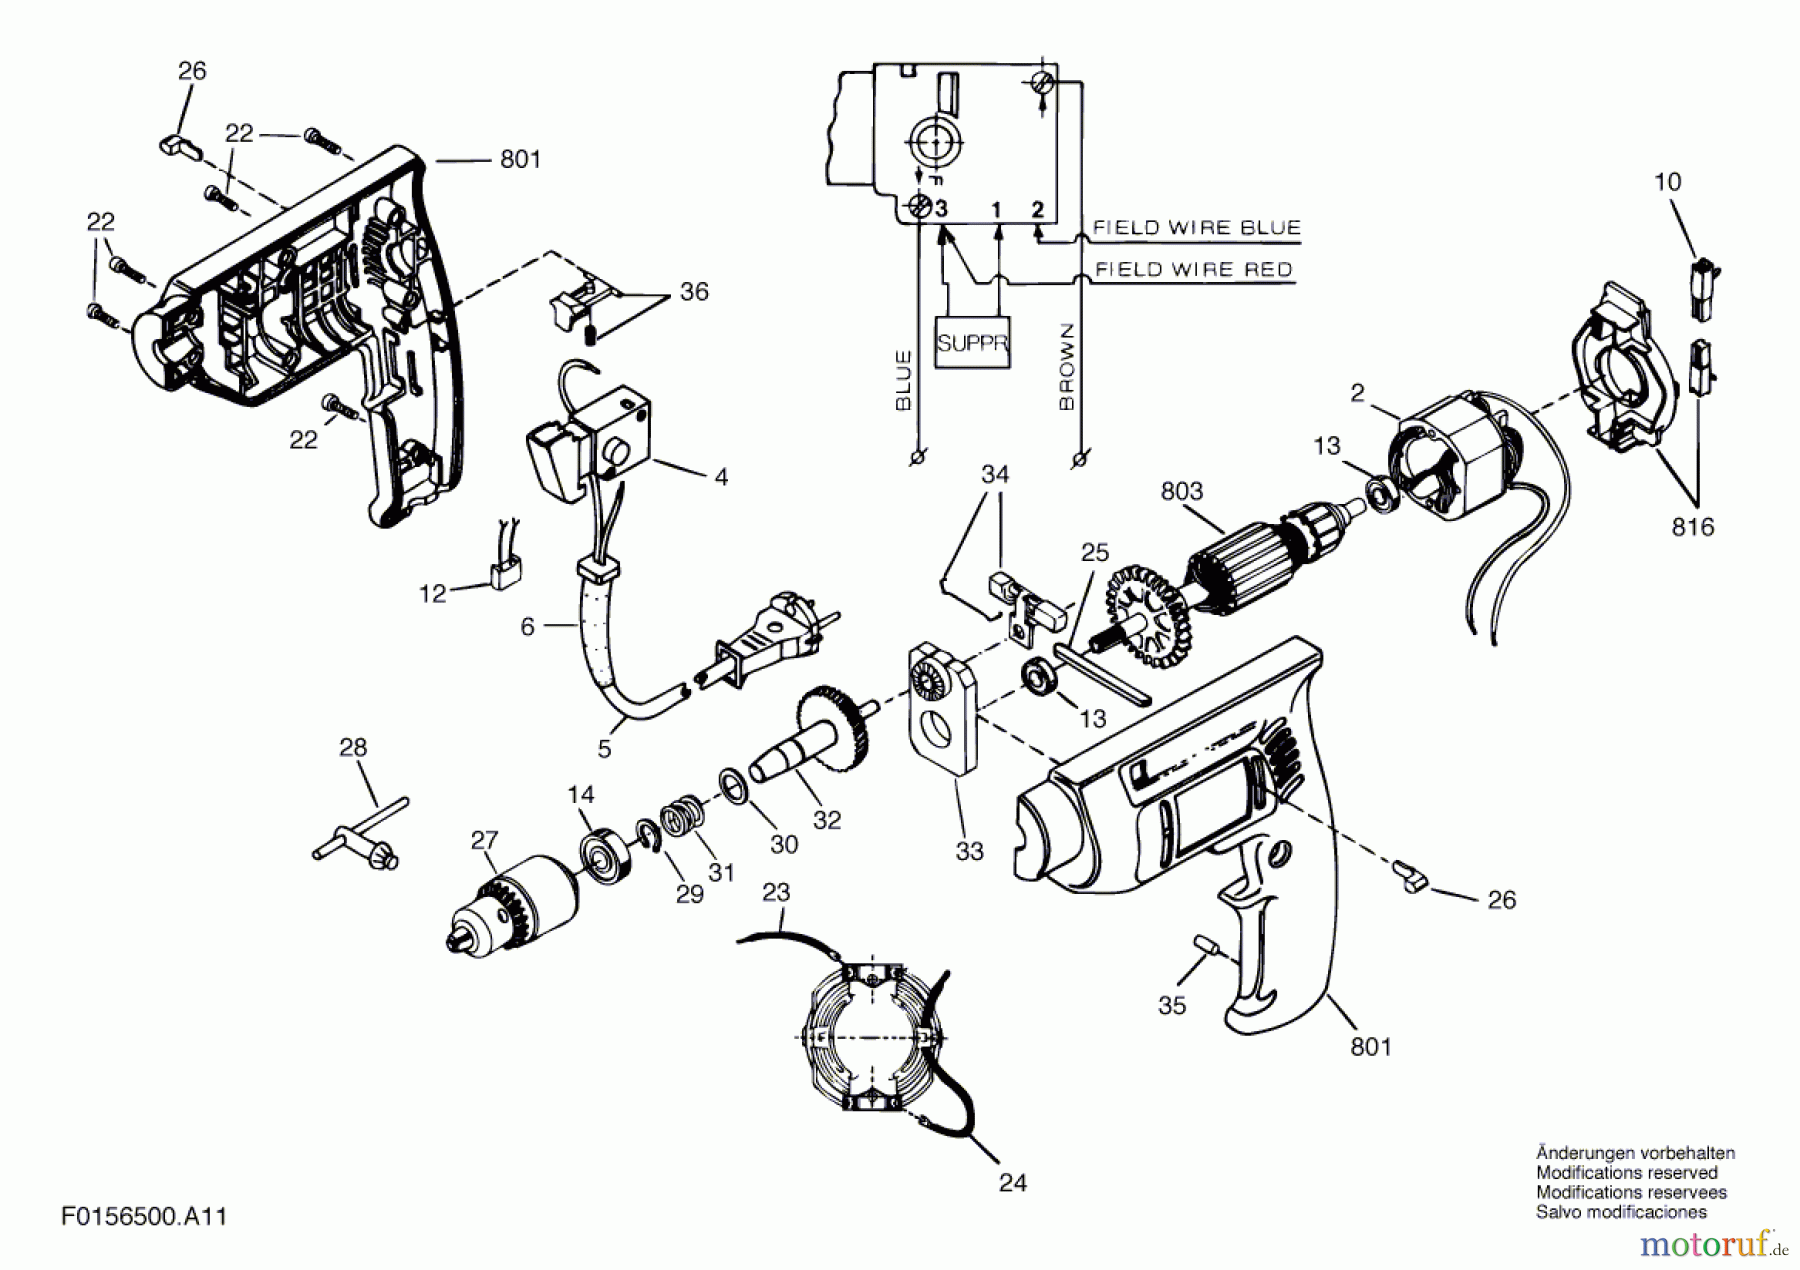  Bosch Werkzeug Schlagbohrmaschine 6500 H1 Seite 1